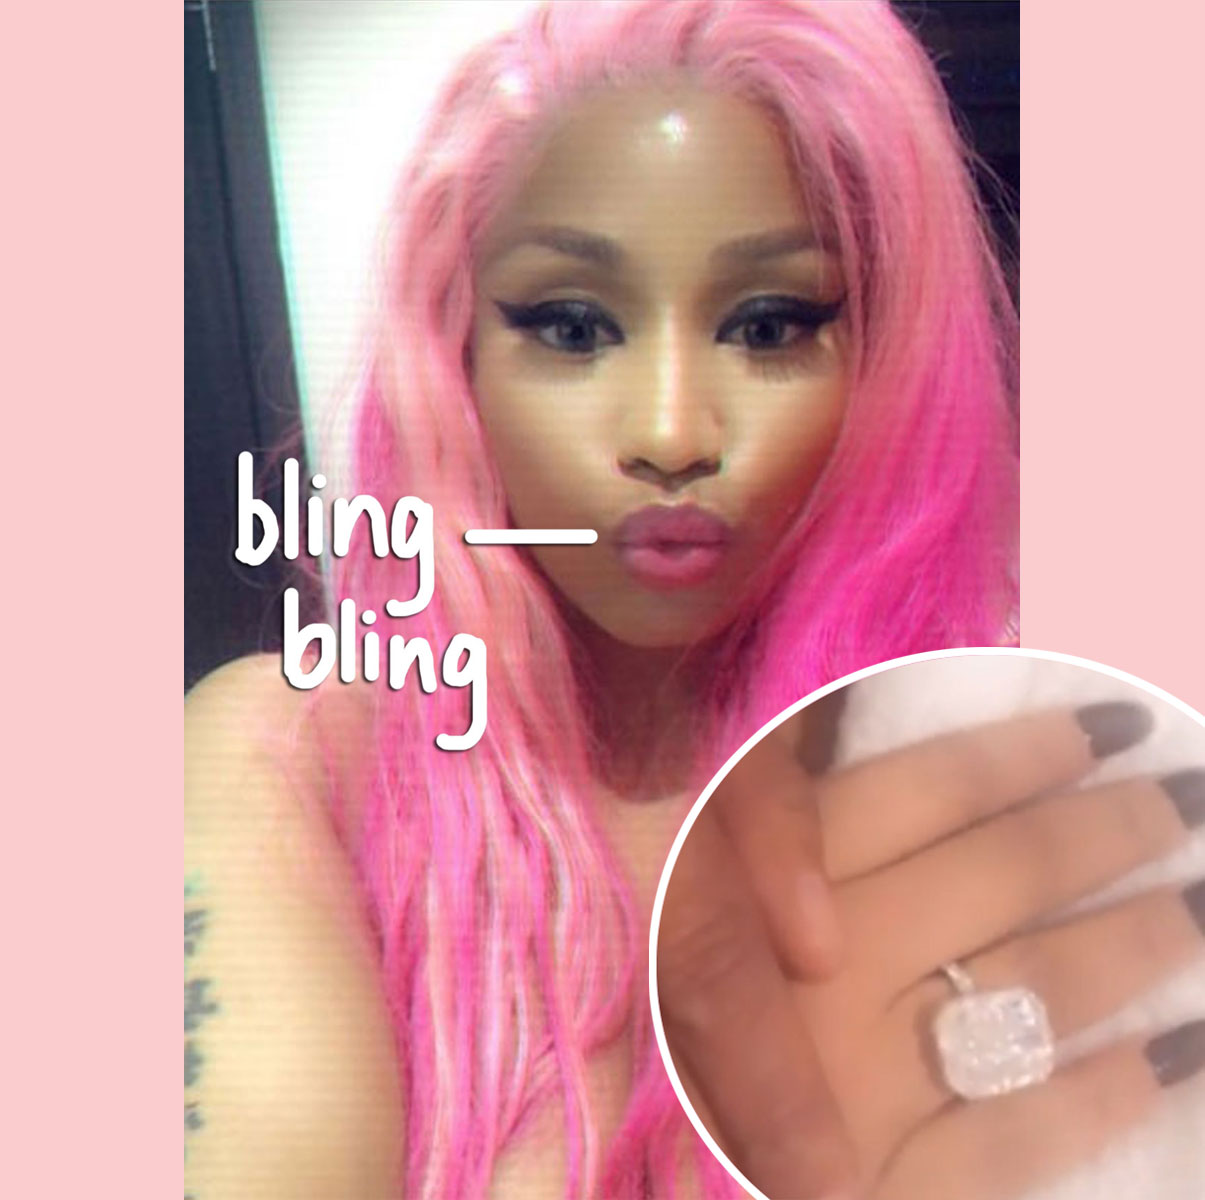 Nicki Minaj's Engagement Ring